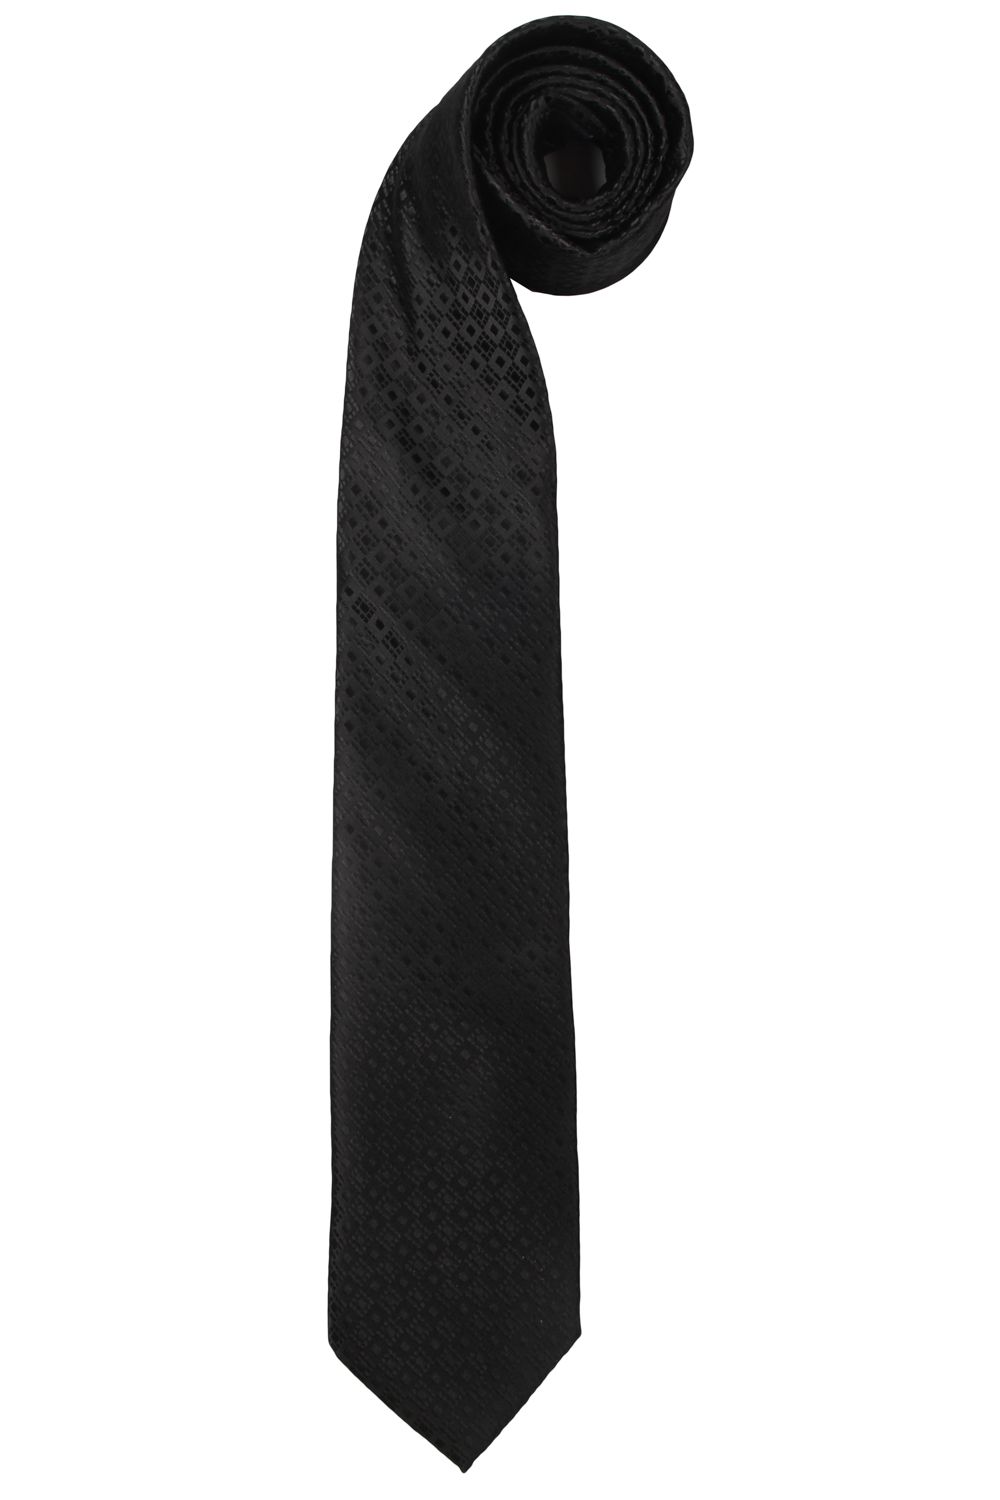 Белый галстук у черного кота 7 букв. Черный галстук. Галстук женский черный. Тонкий черный галстук. Черный галстук для мальчика.